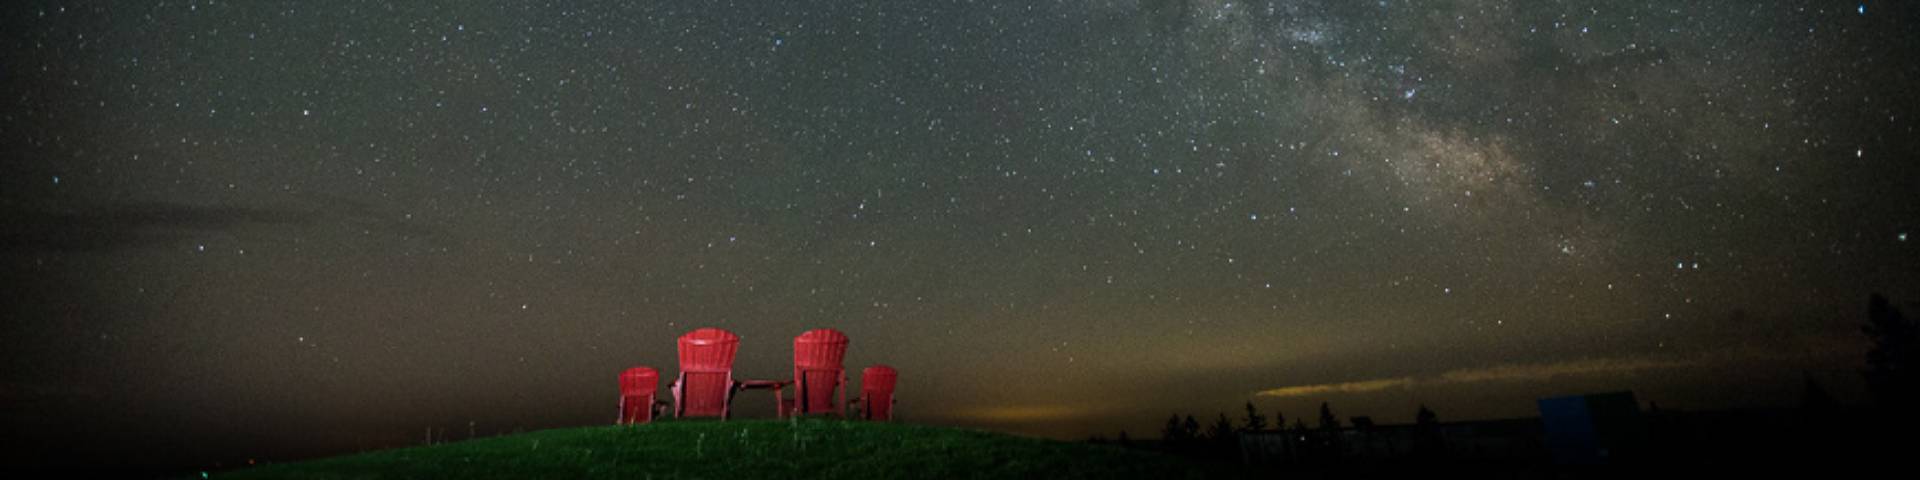 Quatre chaises rouge sous un ciel sombre et étoilé